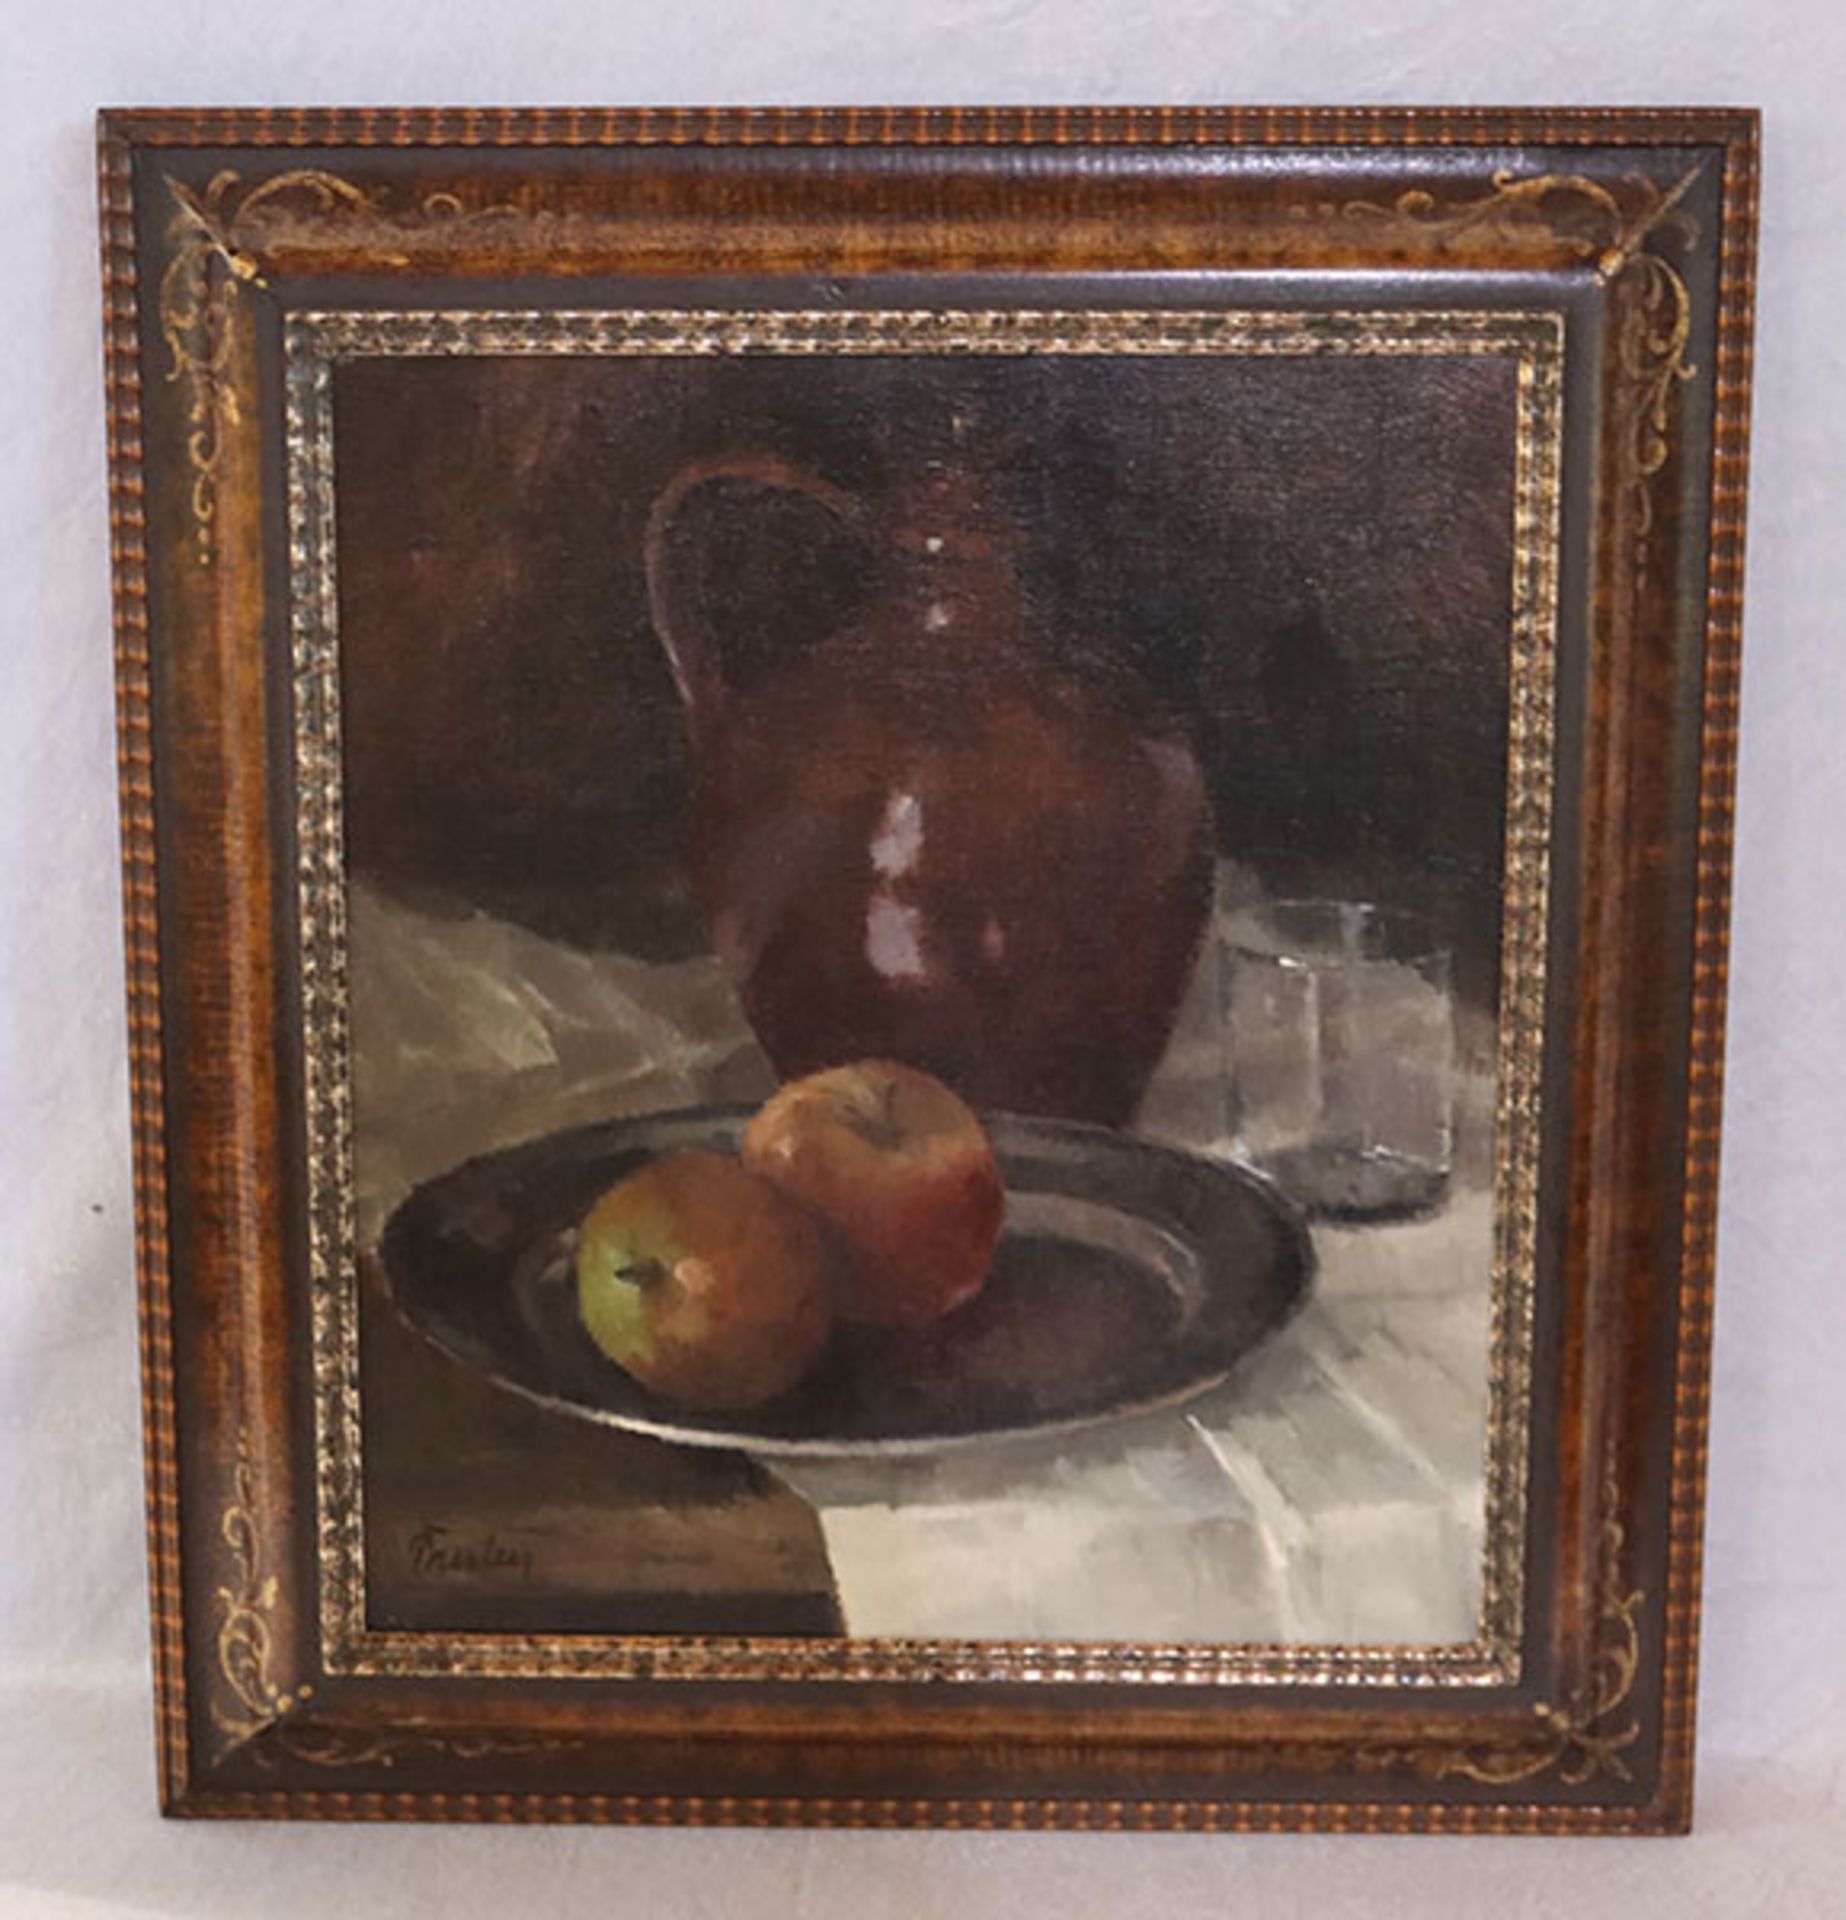 Gemälde ÖL/Malkarton 'Stillleben mit Krug und Äpfel', signiert Paulus, Paul Paulus, * 1915 Prien